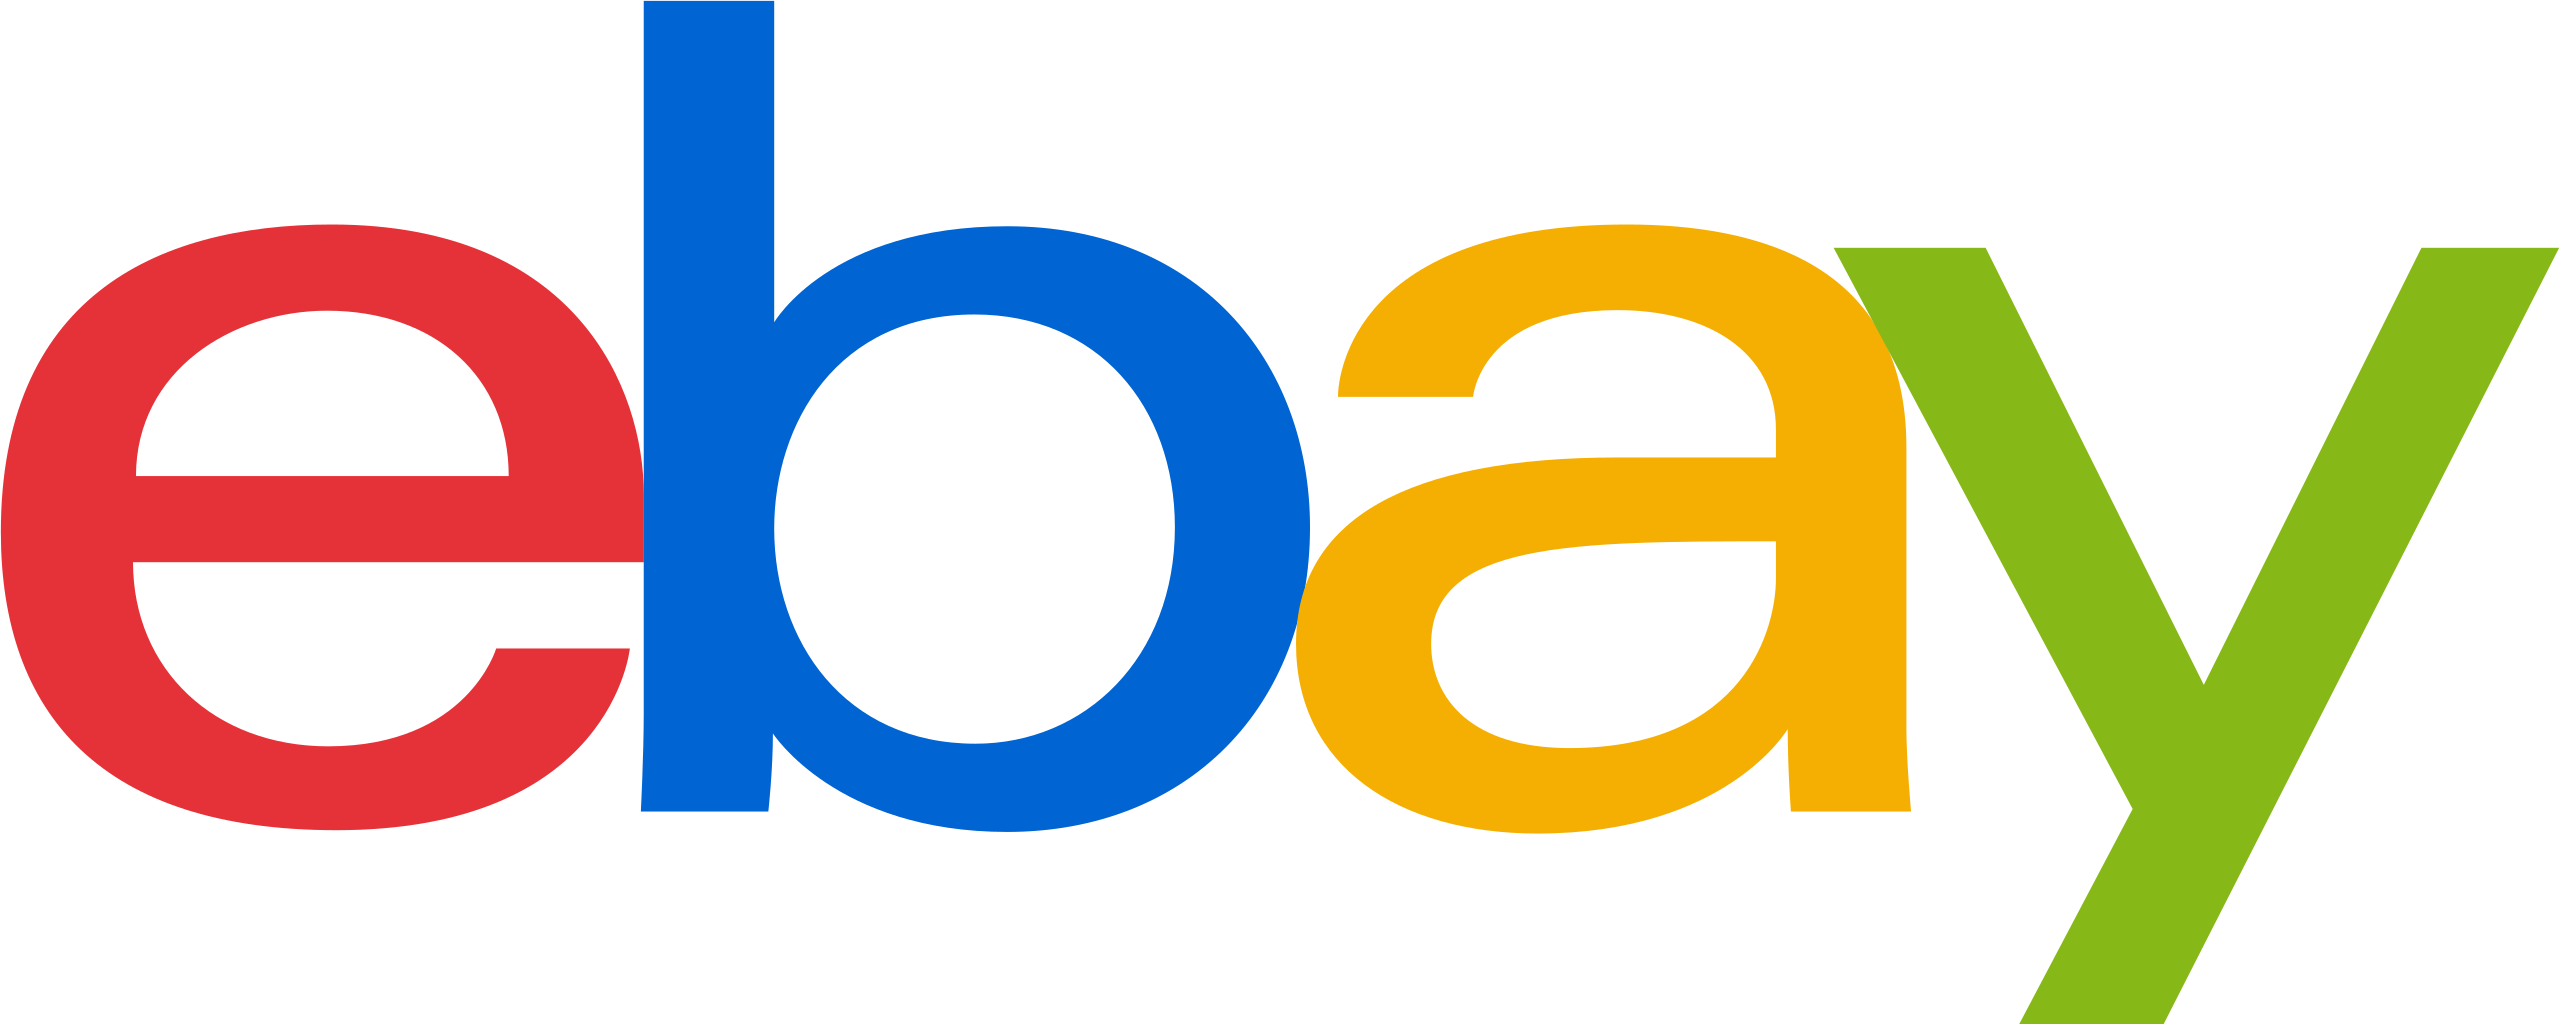 Vendor logo for eBay